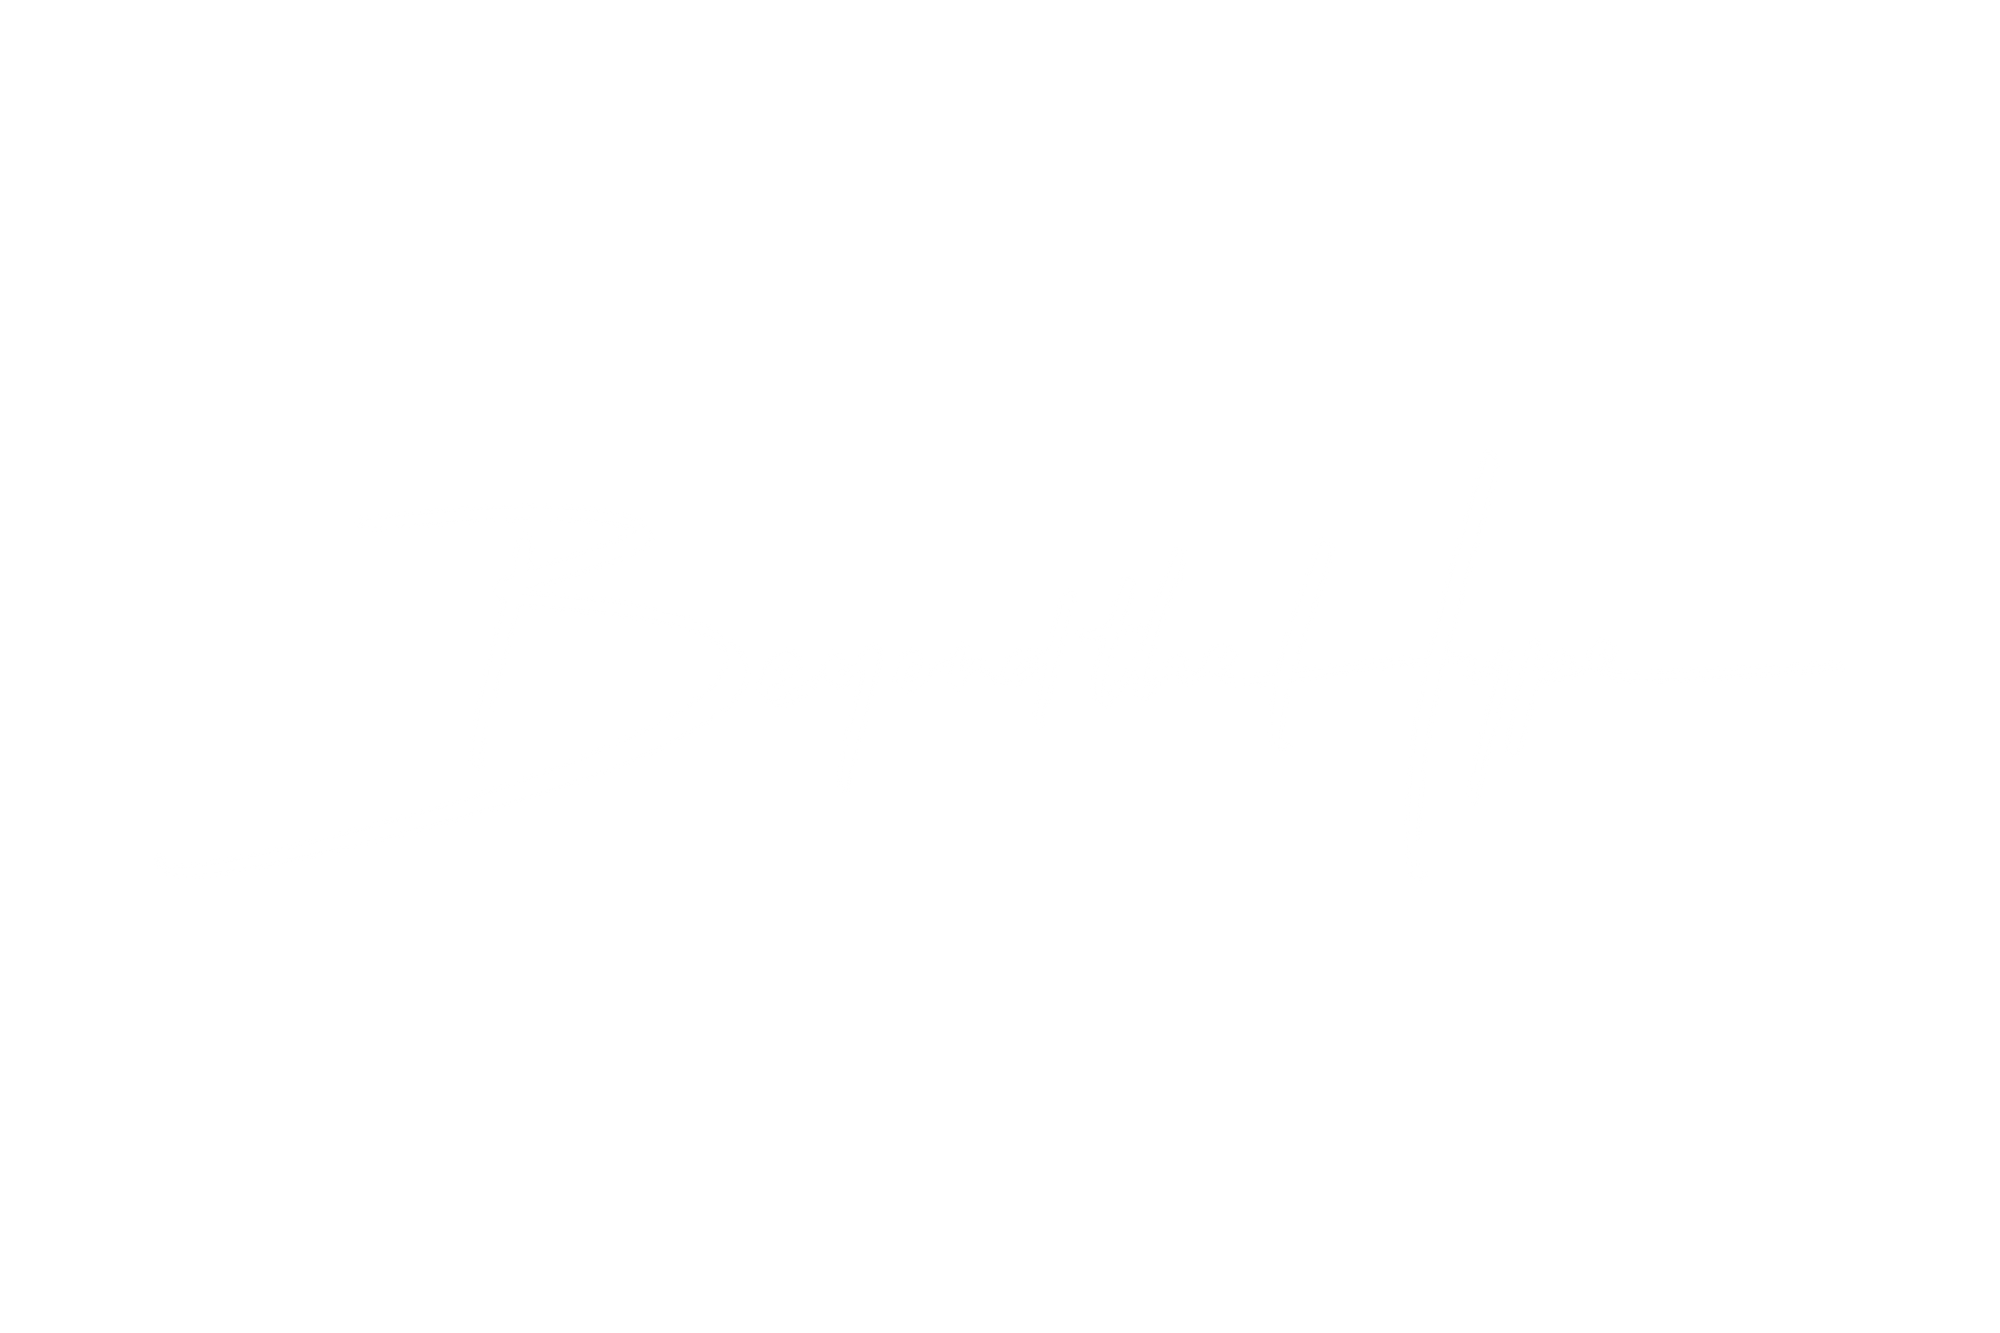 Beyondthehype.media